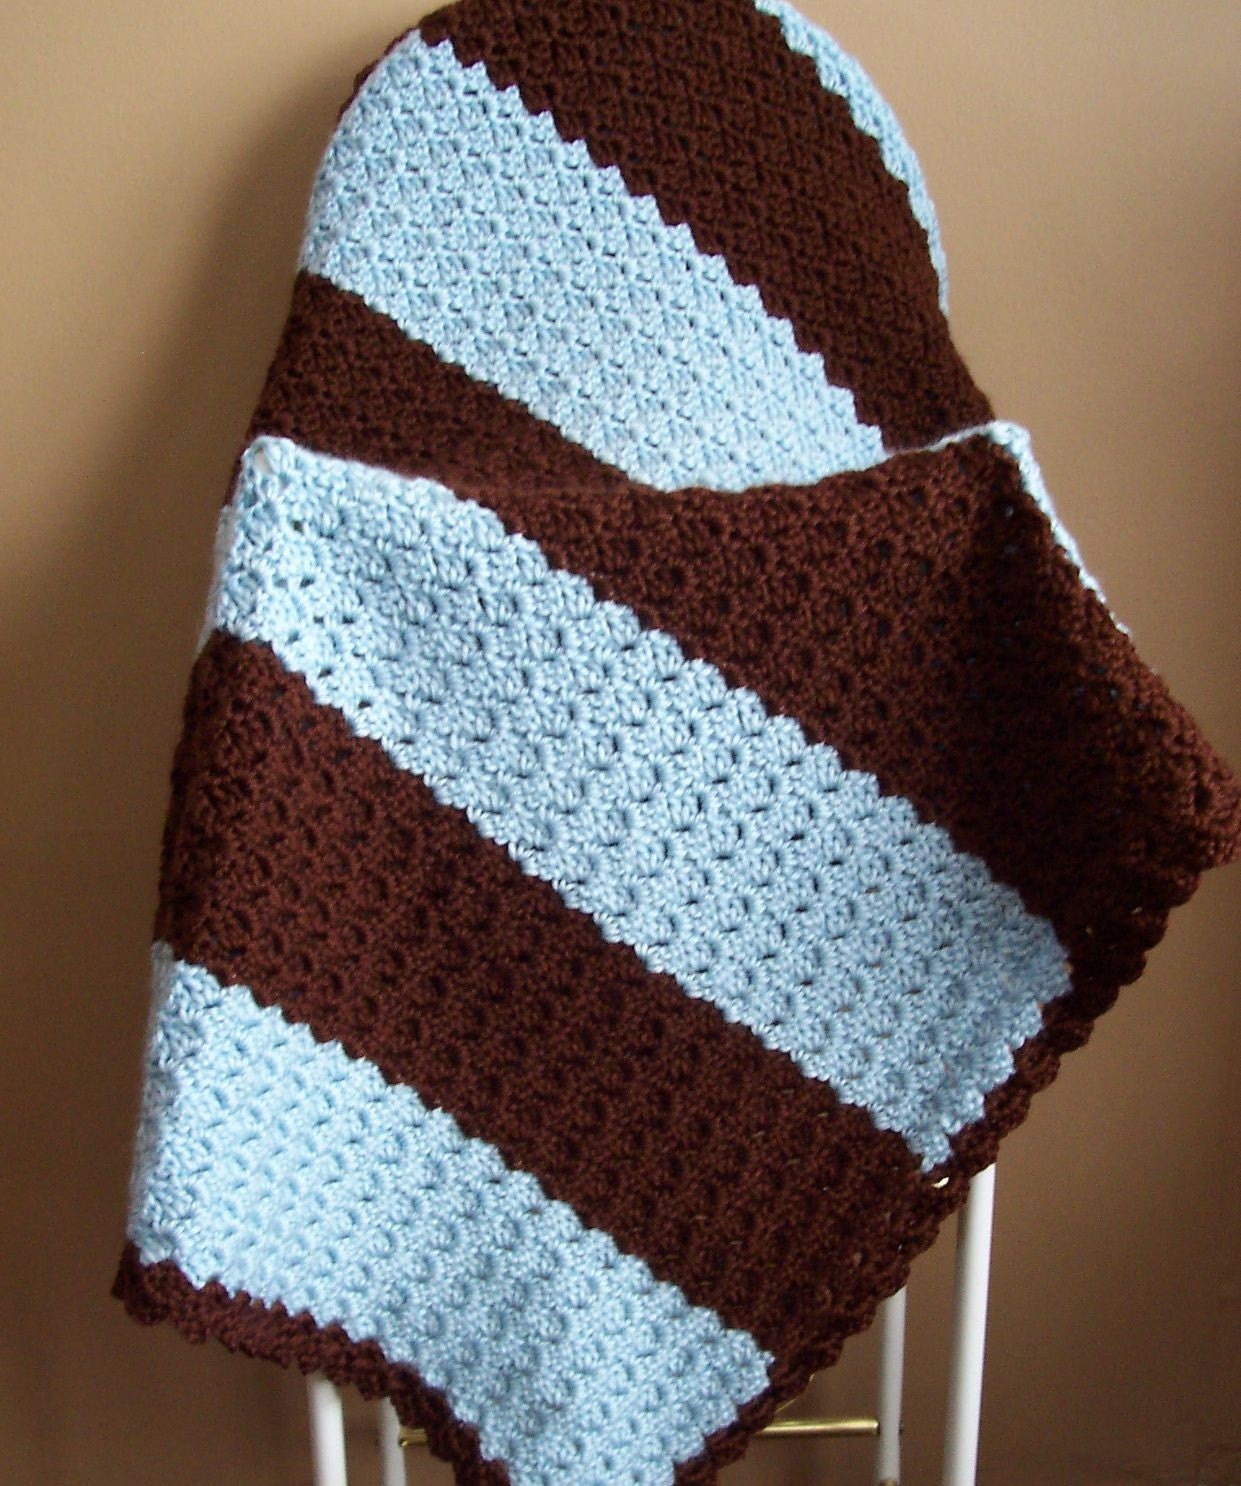 Crocheted Baby Afghan Blanket Baby Blue/Chocolate Brown